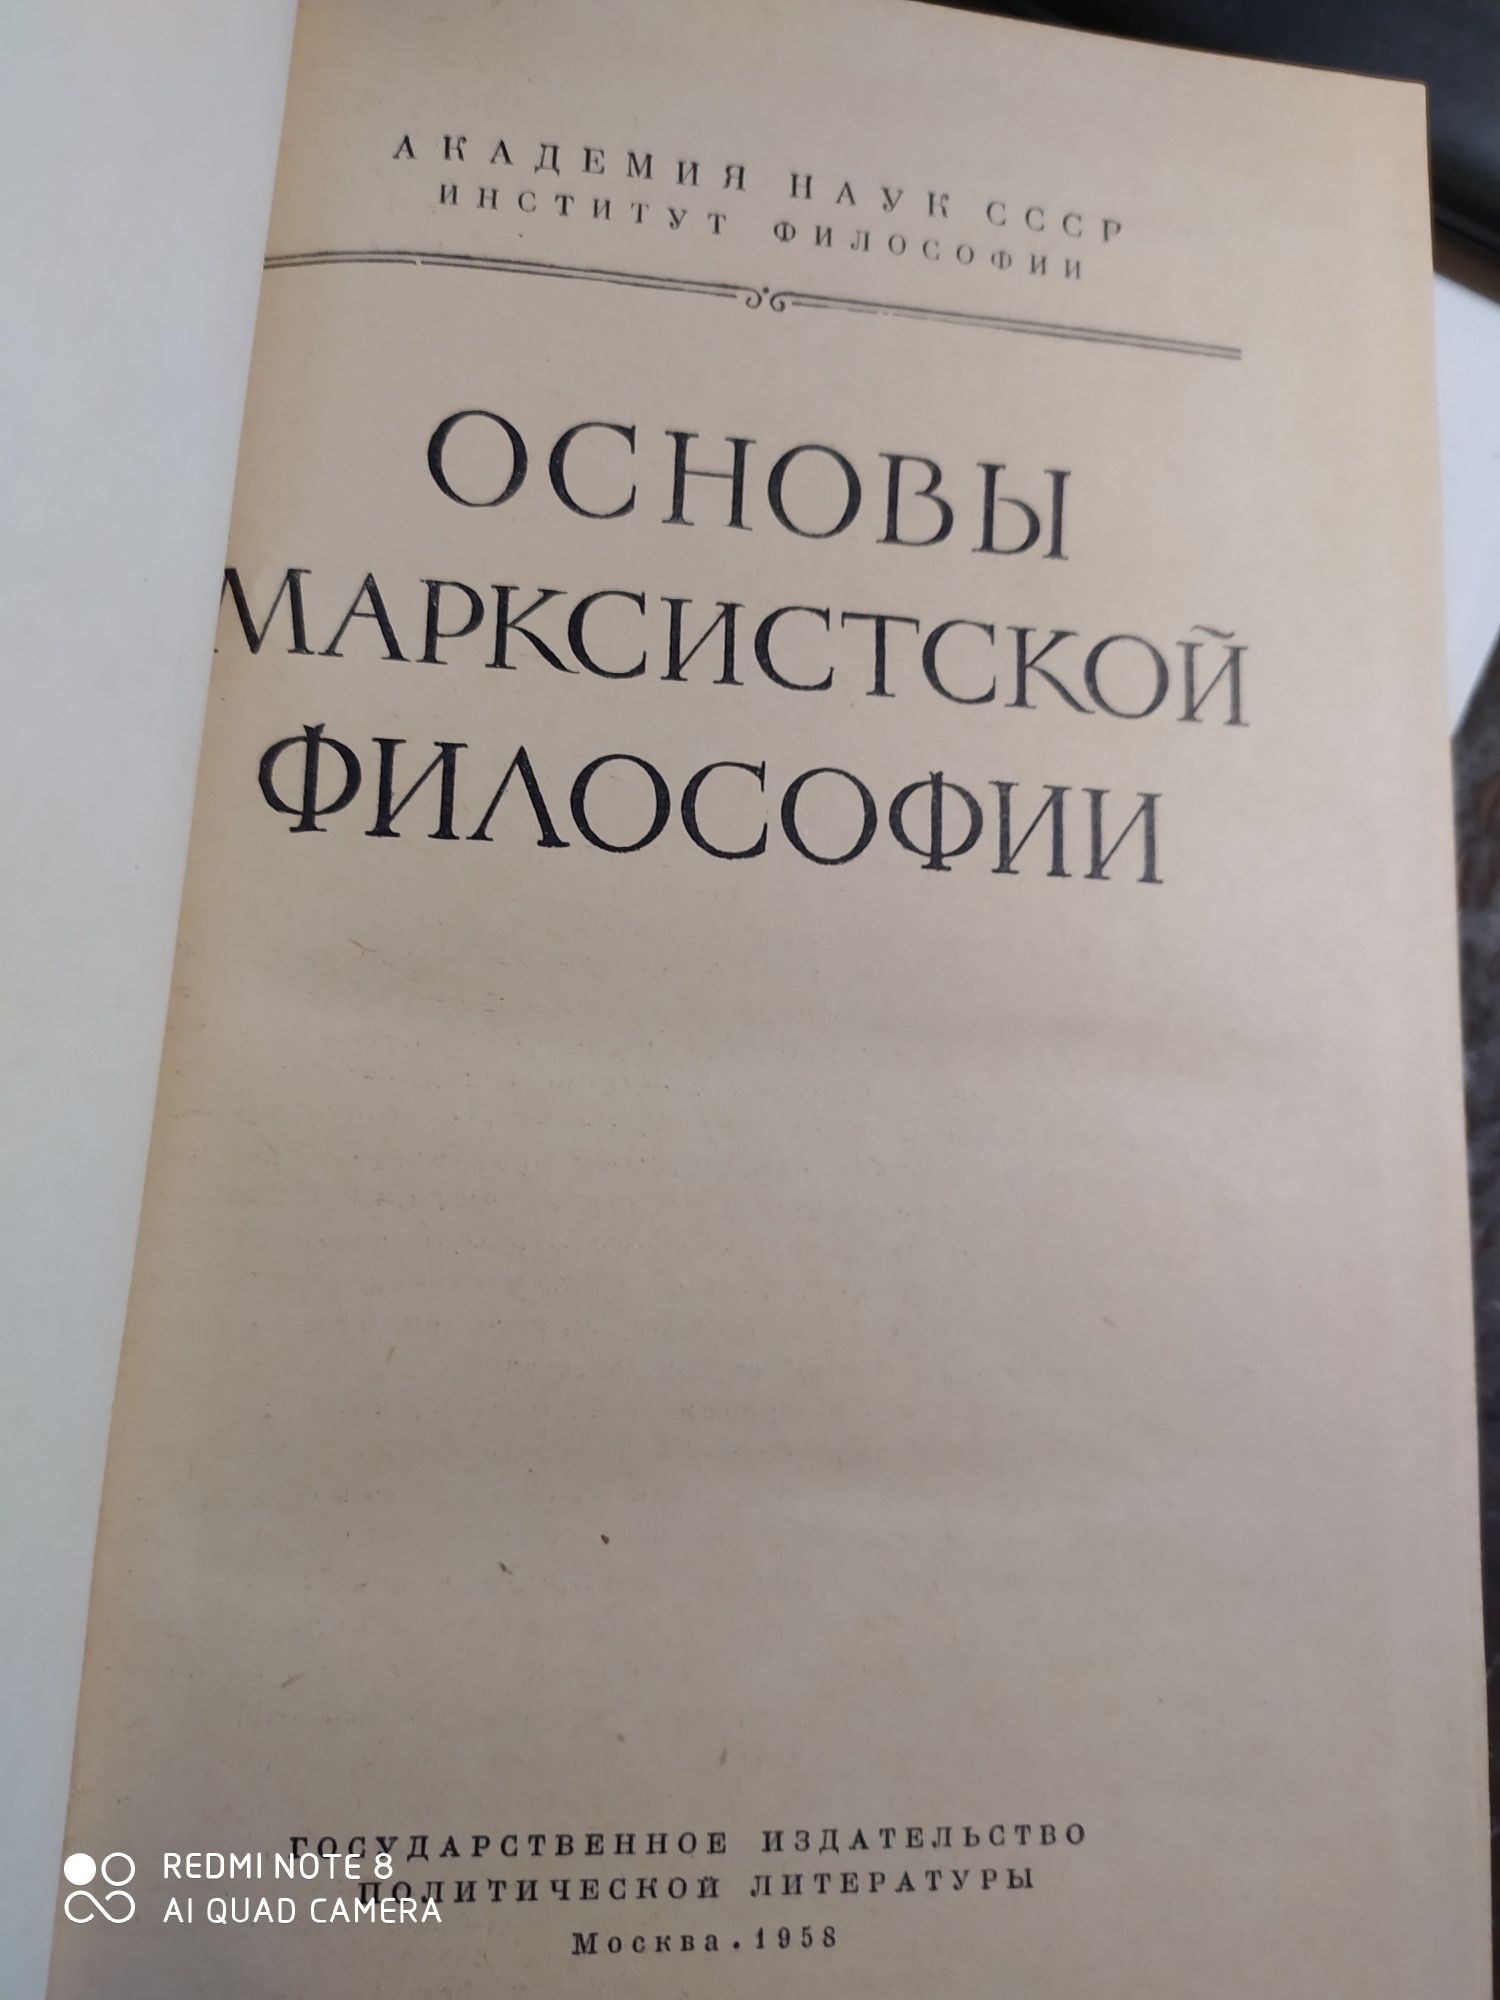 Книга Академии наук СССР 1958г